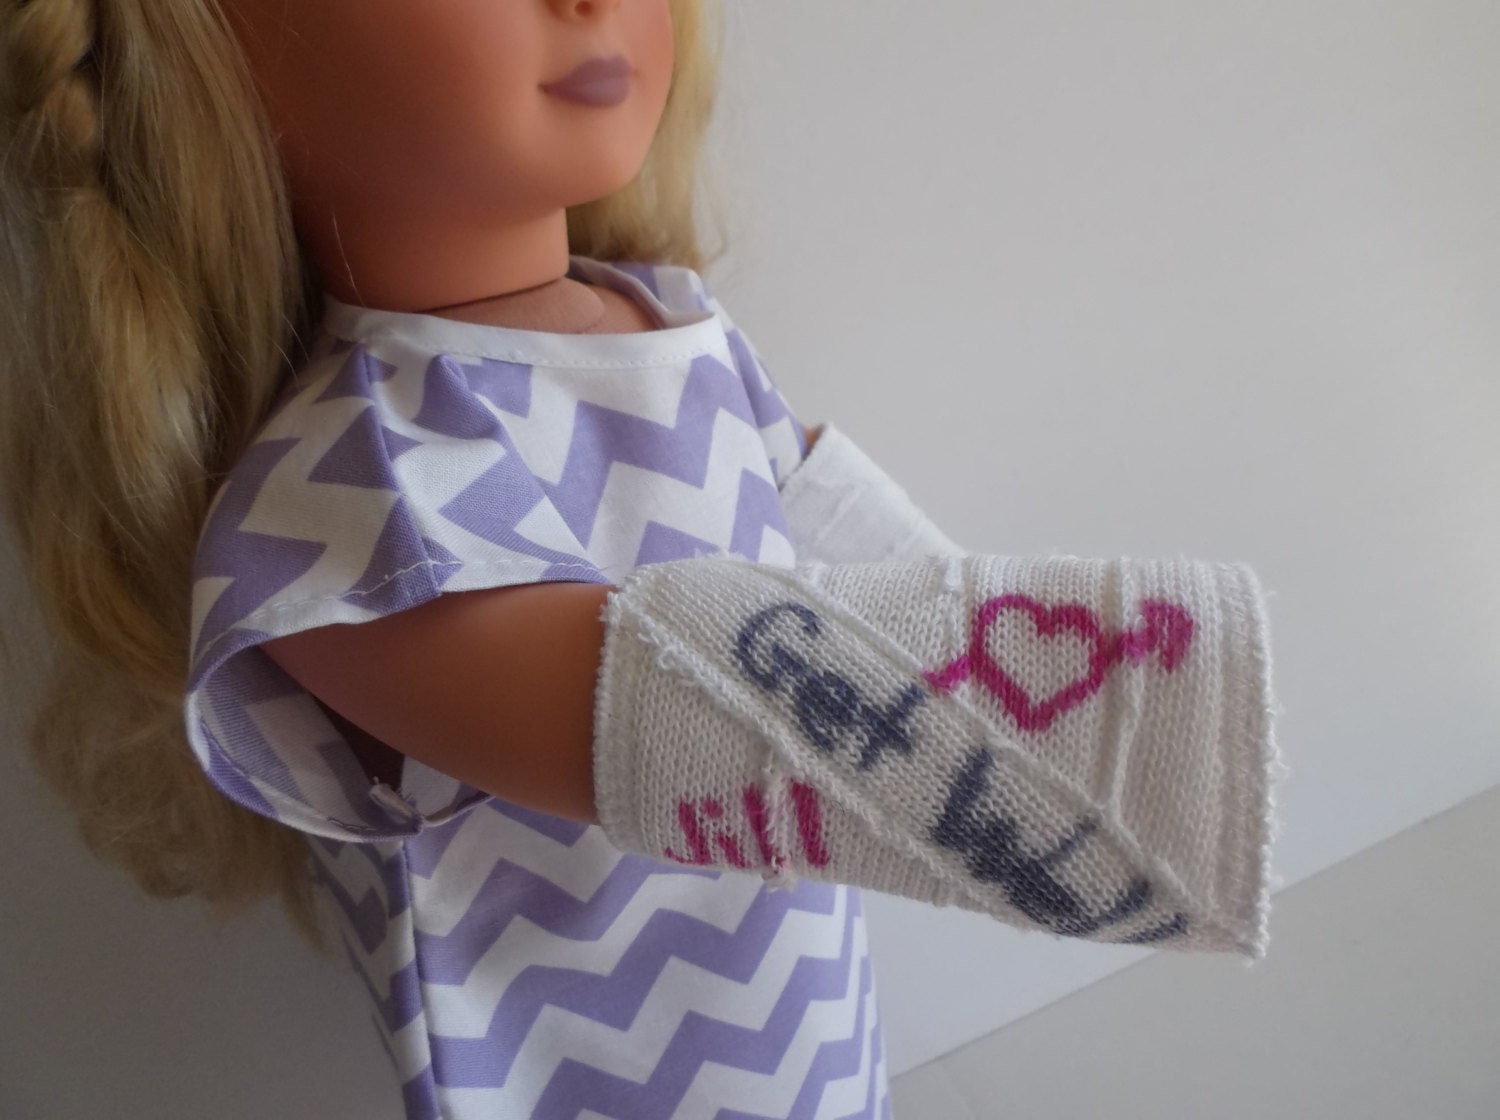 journey girl doll arm broken